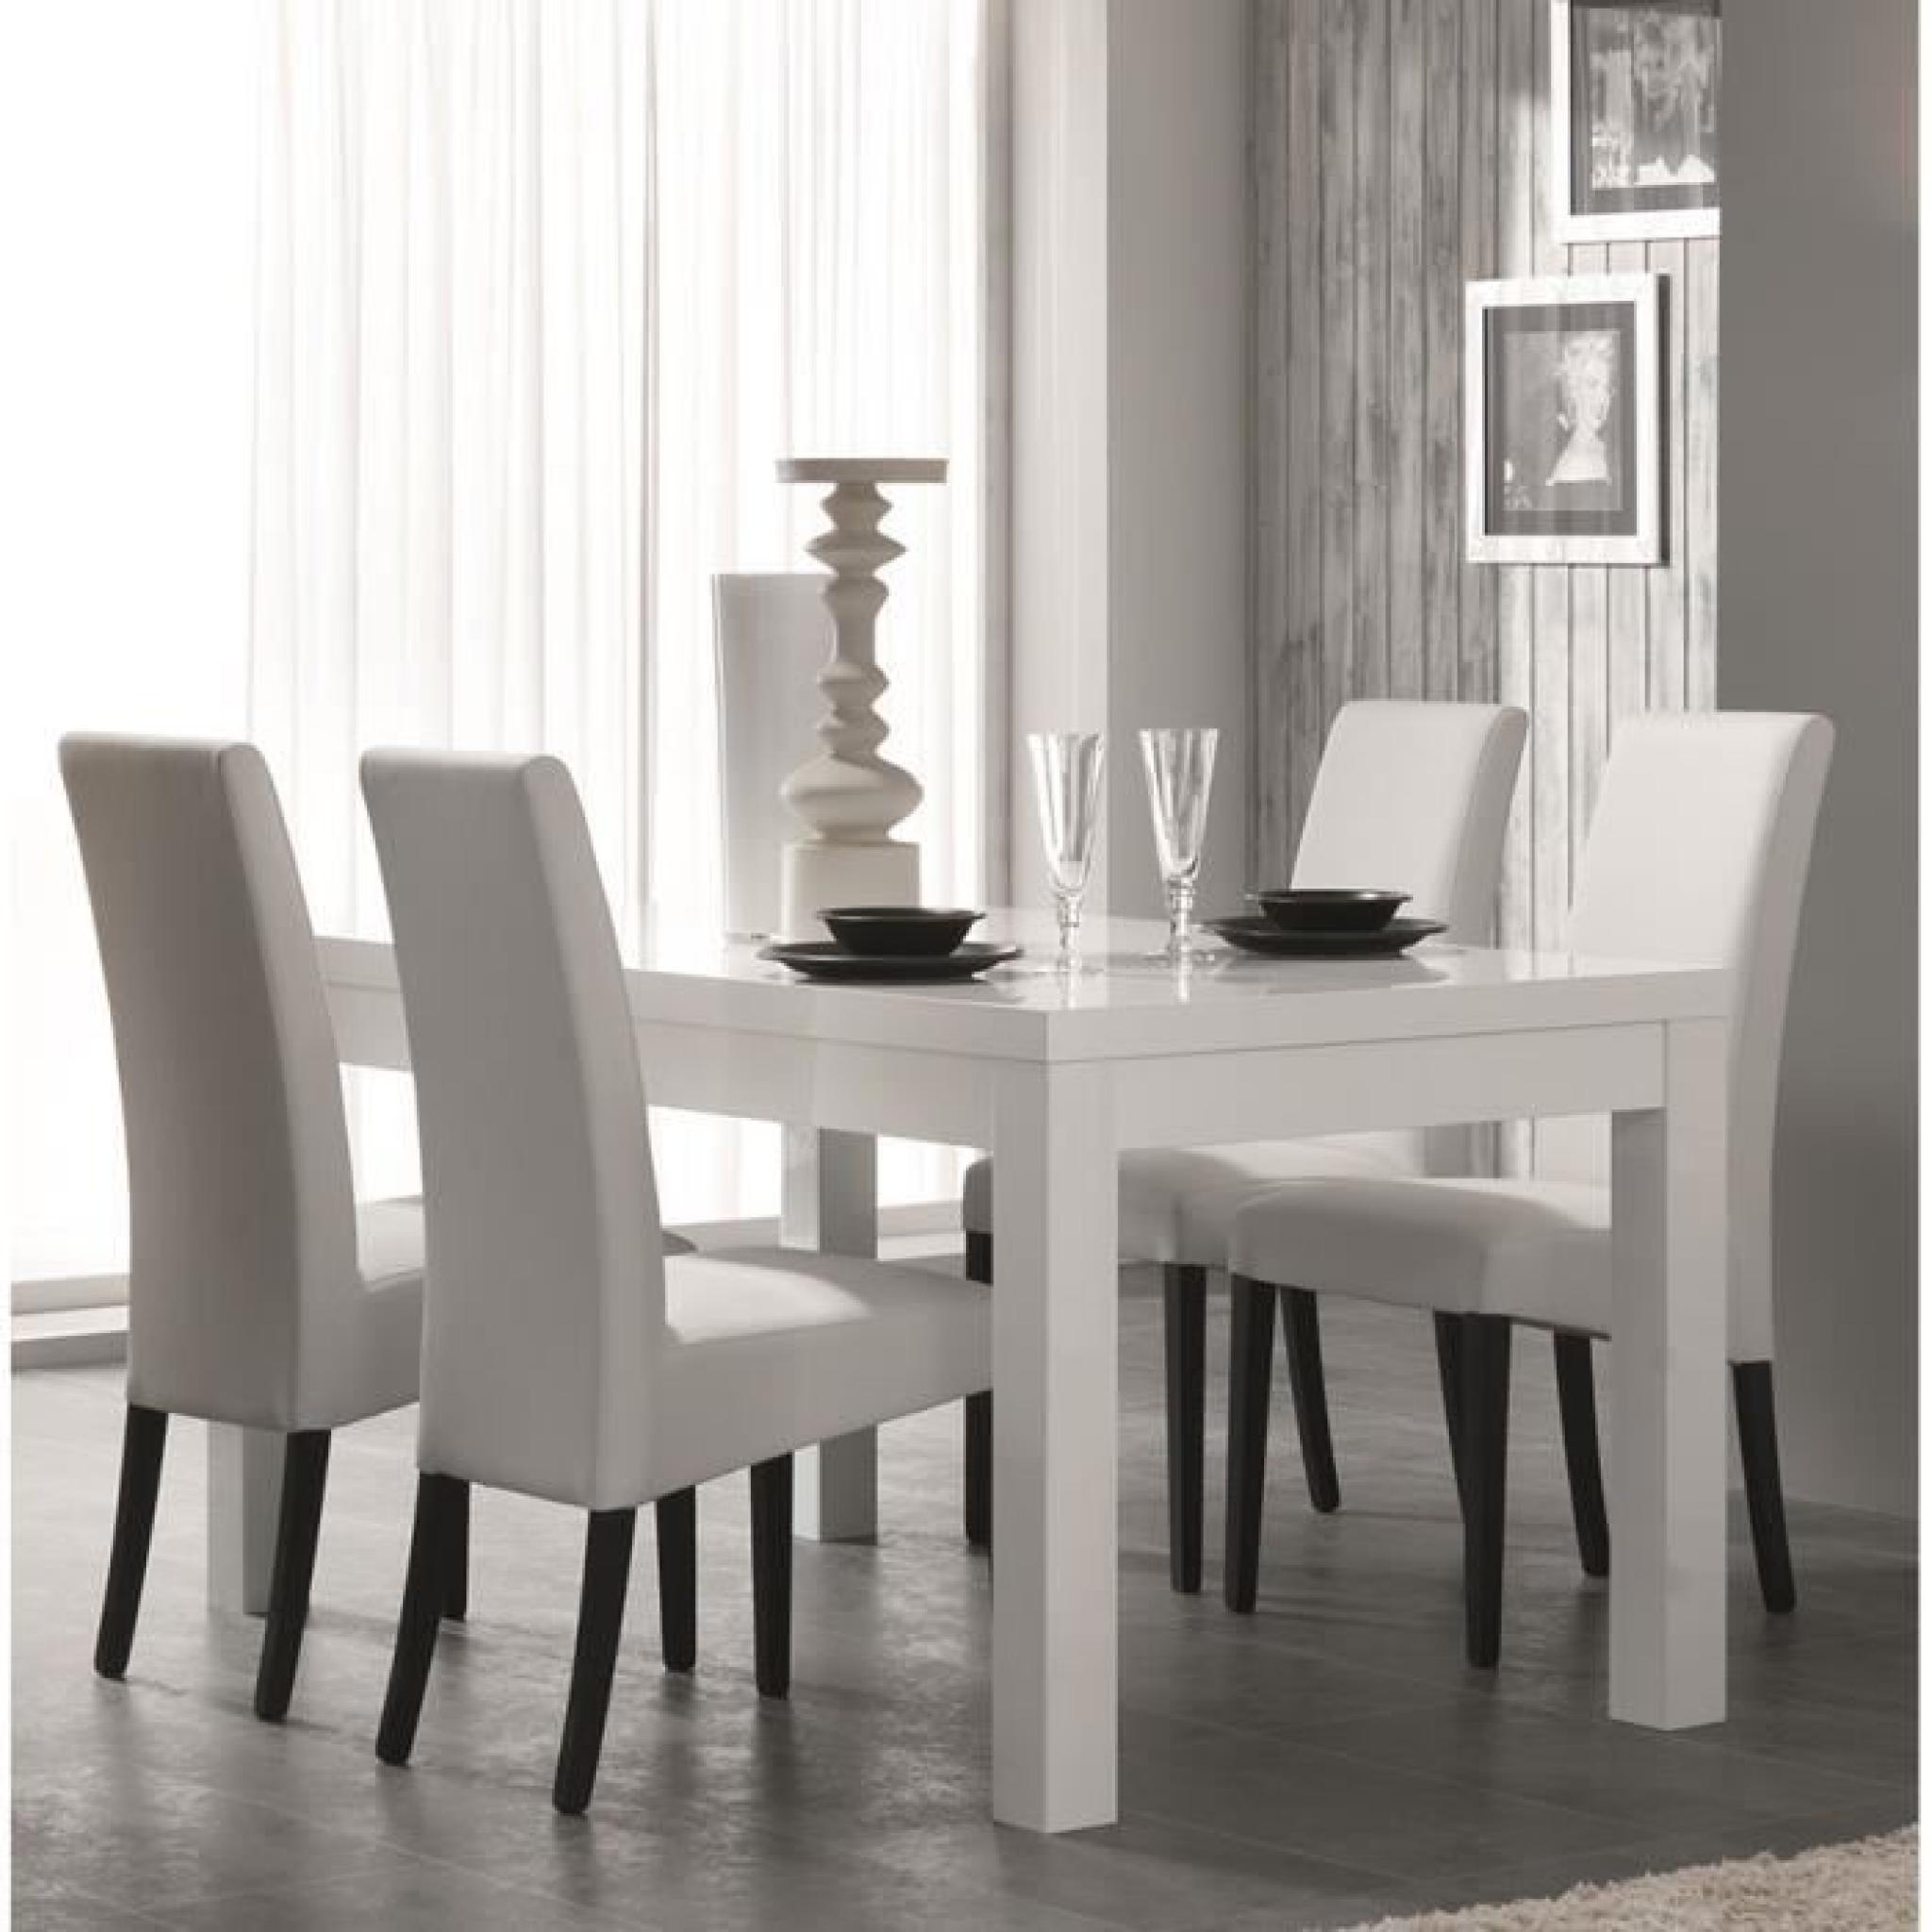 Table à manger blanc laqué design DIVINE Table 160 cm